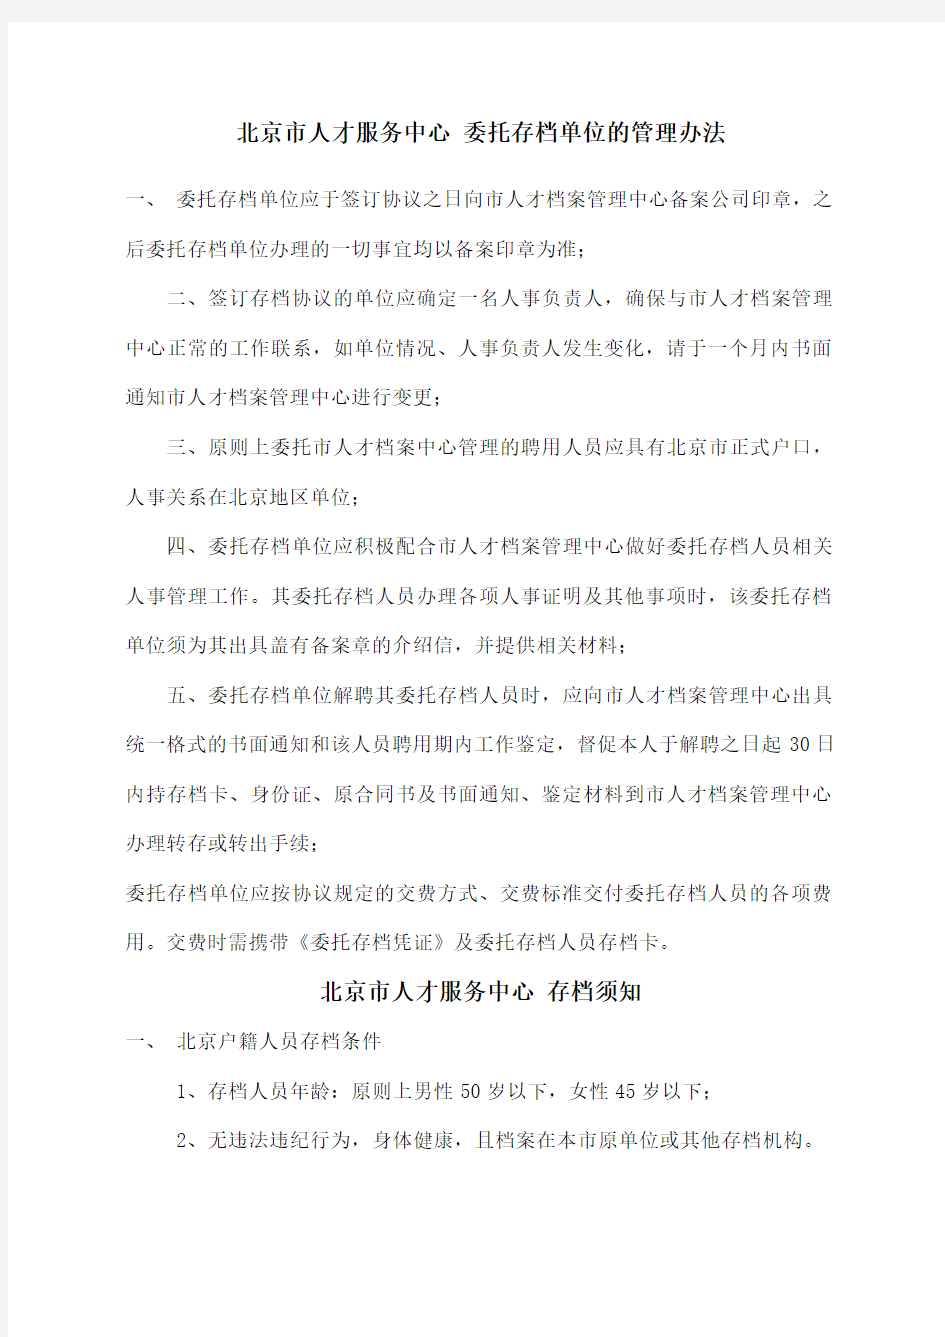 北京市人才服务中心委托存档单位的管理办法